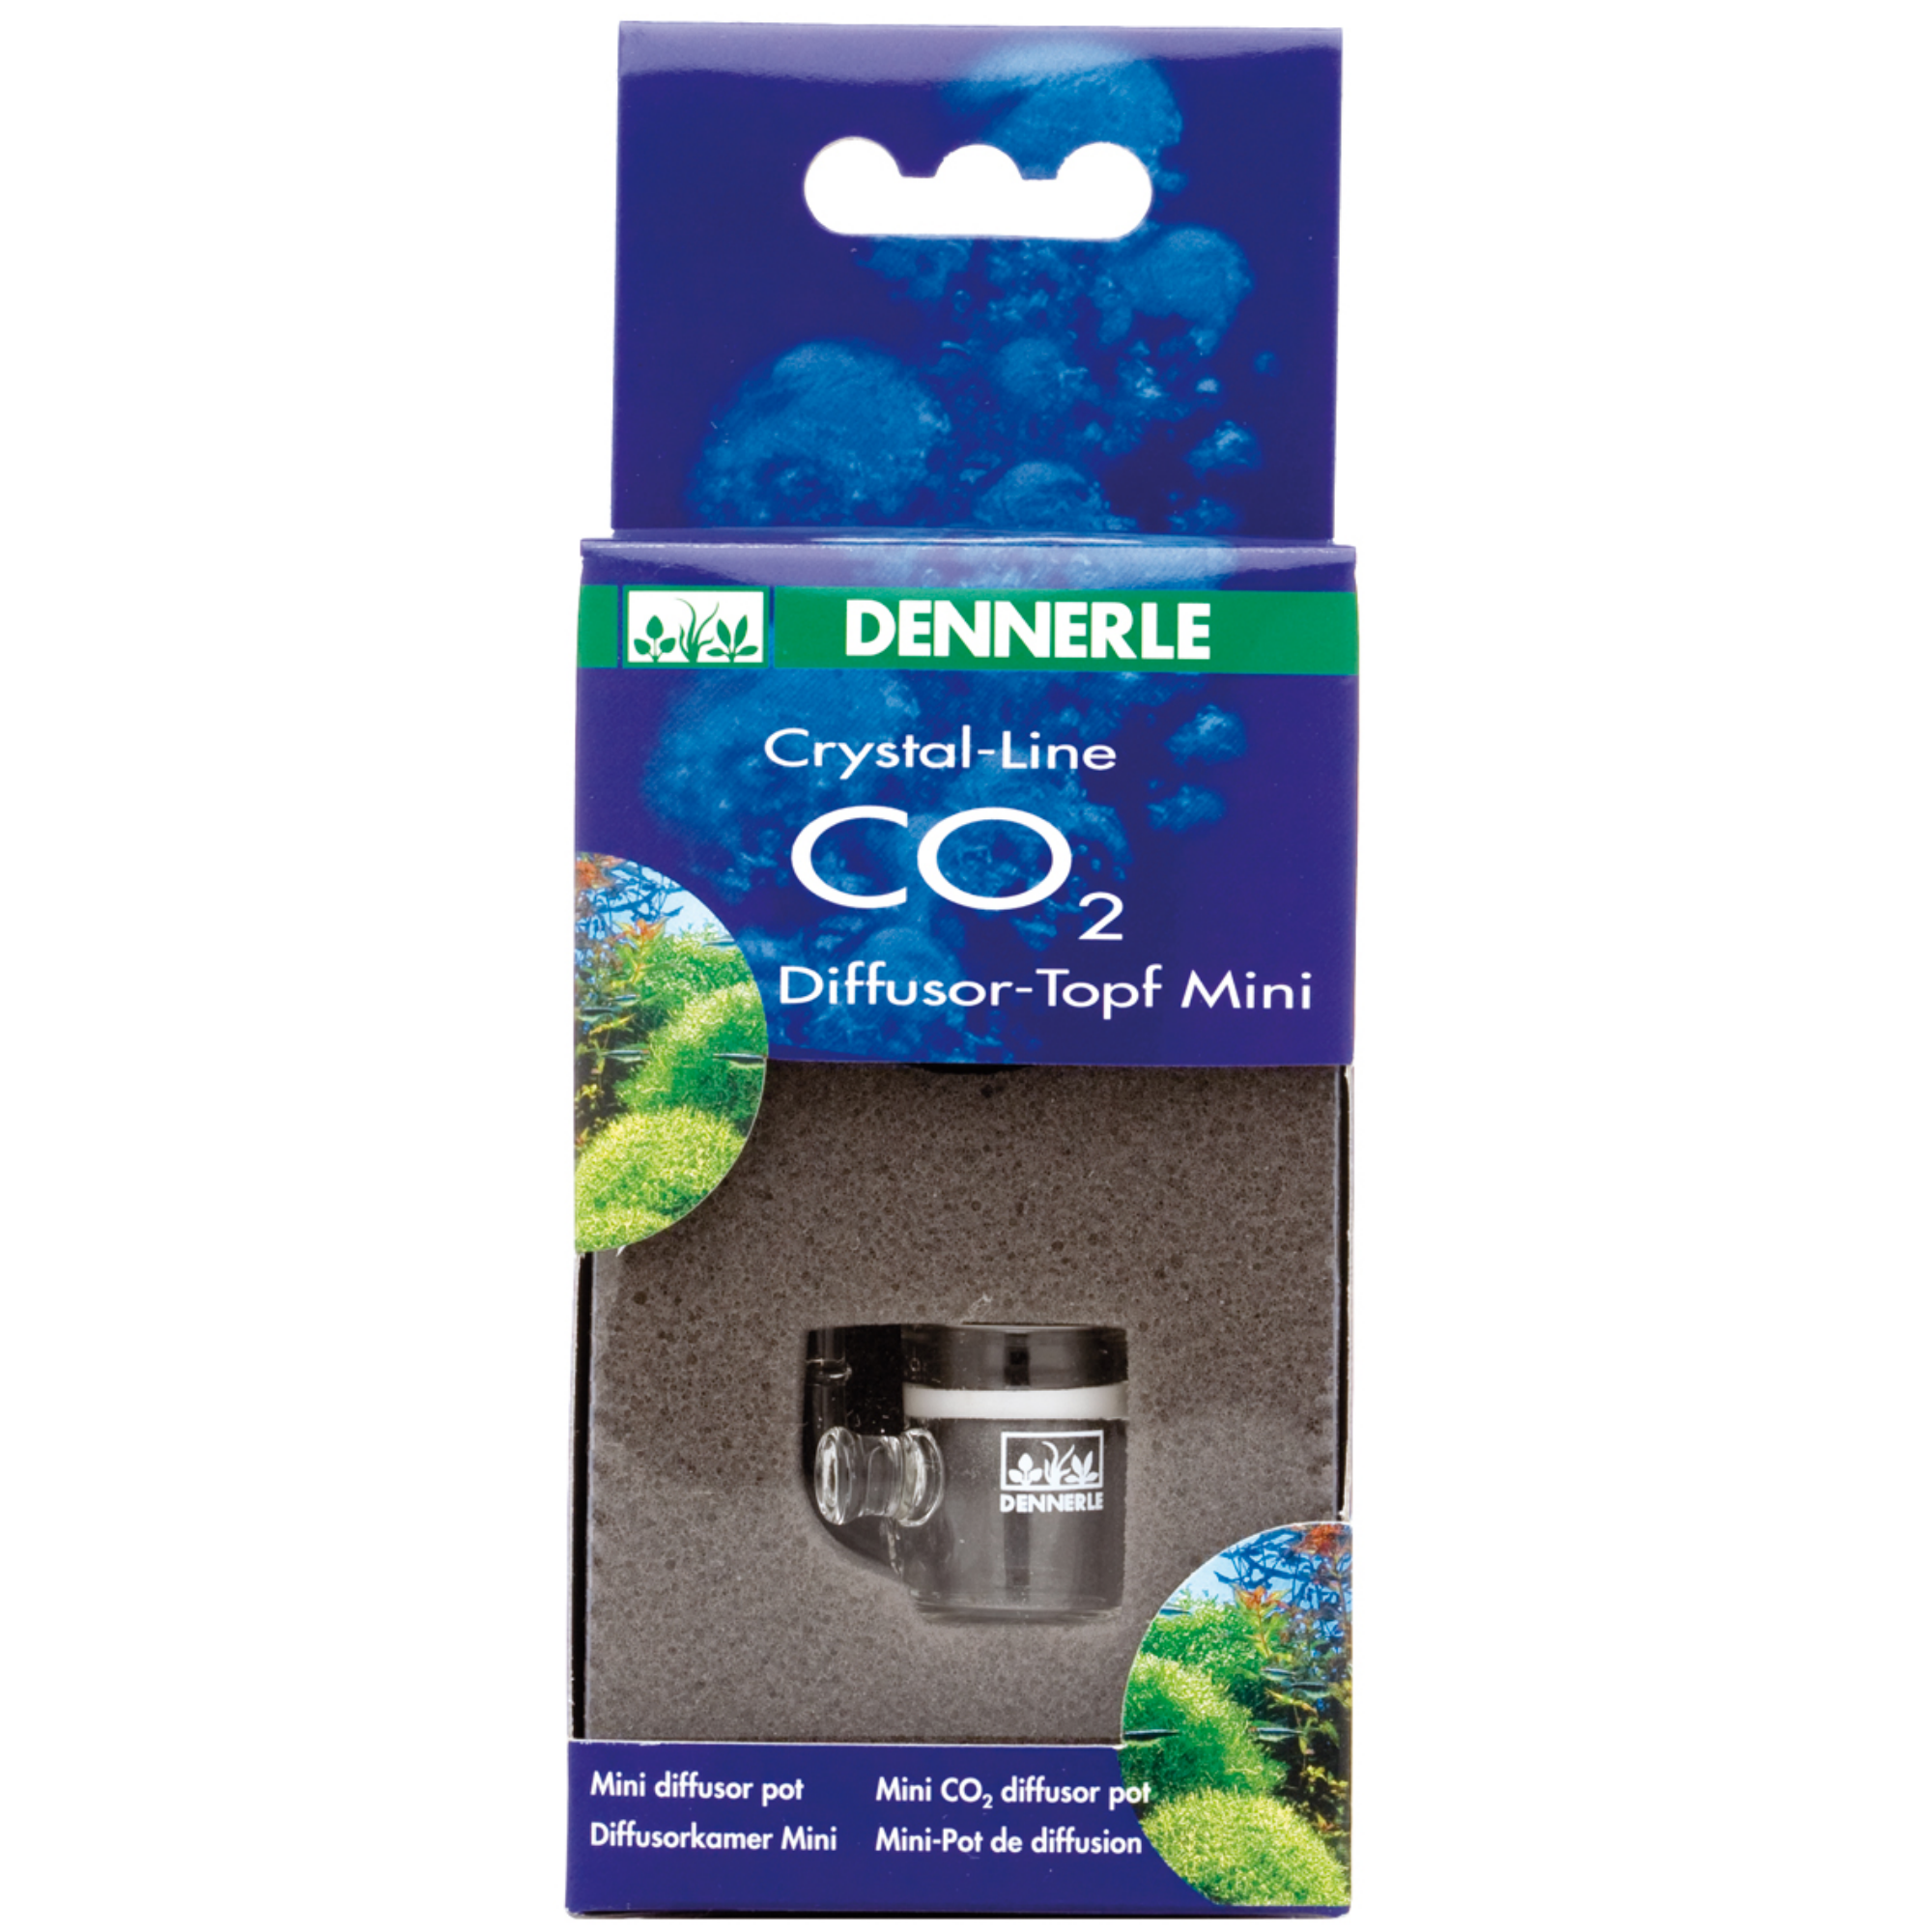 CO2 Diffusor Topf Mini + product picture